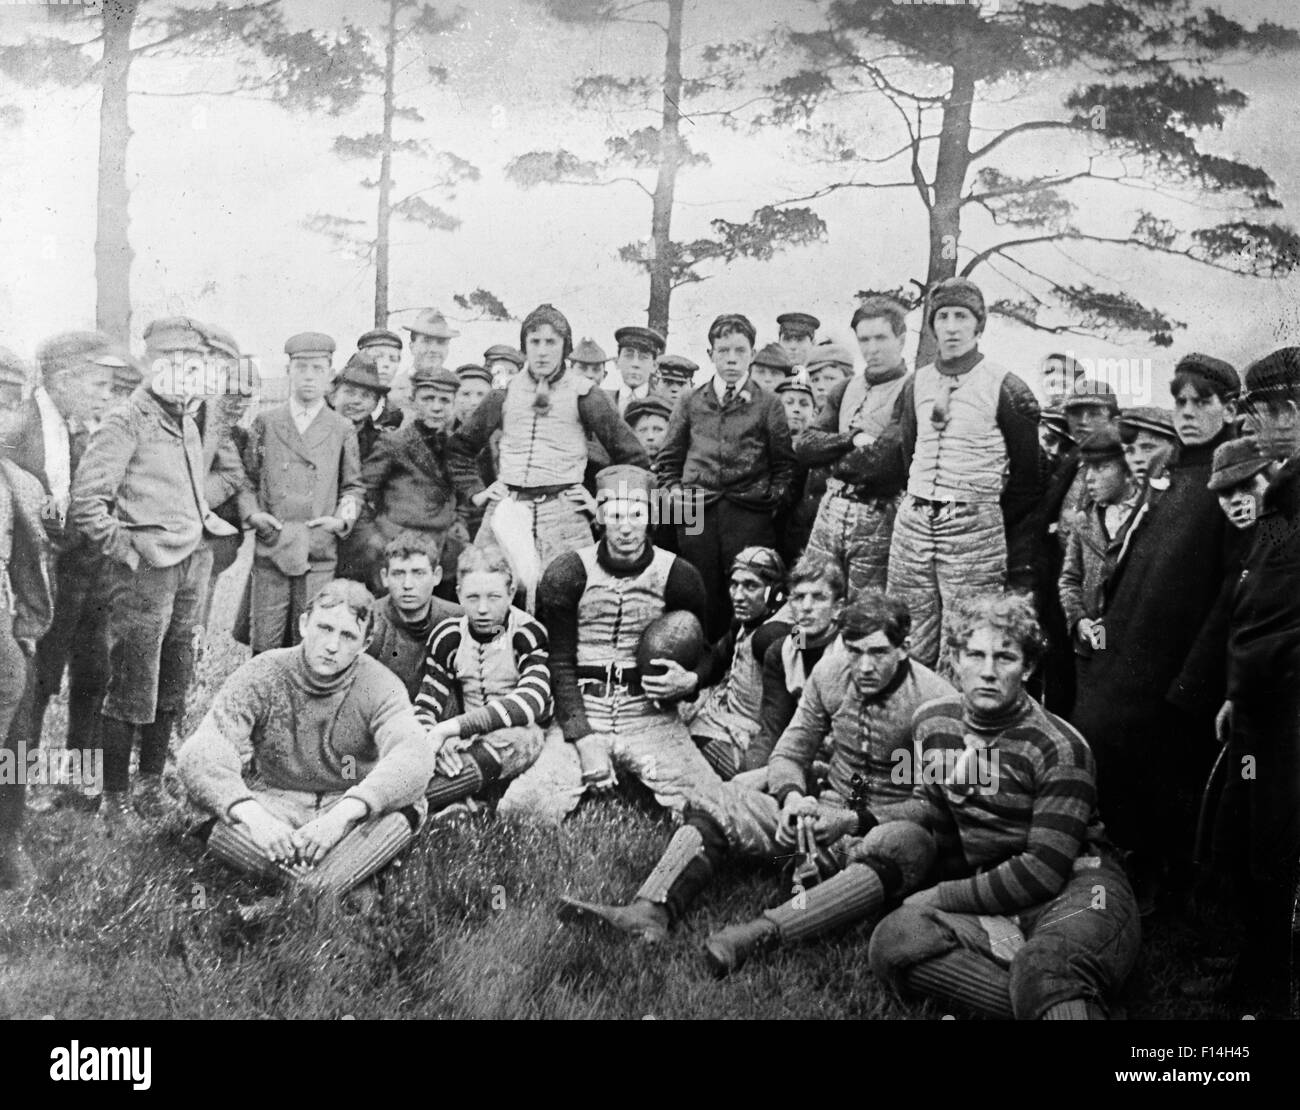 1890 1890 TOUR DU SIÈCLE PORTRAIT DE GROUPE DE L'ÉQUIPE DE FOOTBALL AVEC LES GARÇONS CAMARADES joueurs portant des uniformes d'équipe Banque D'Images